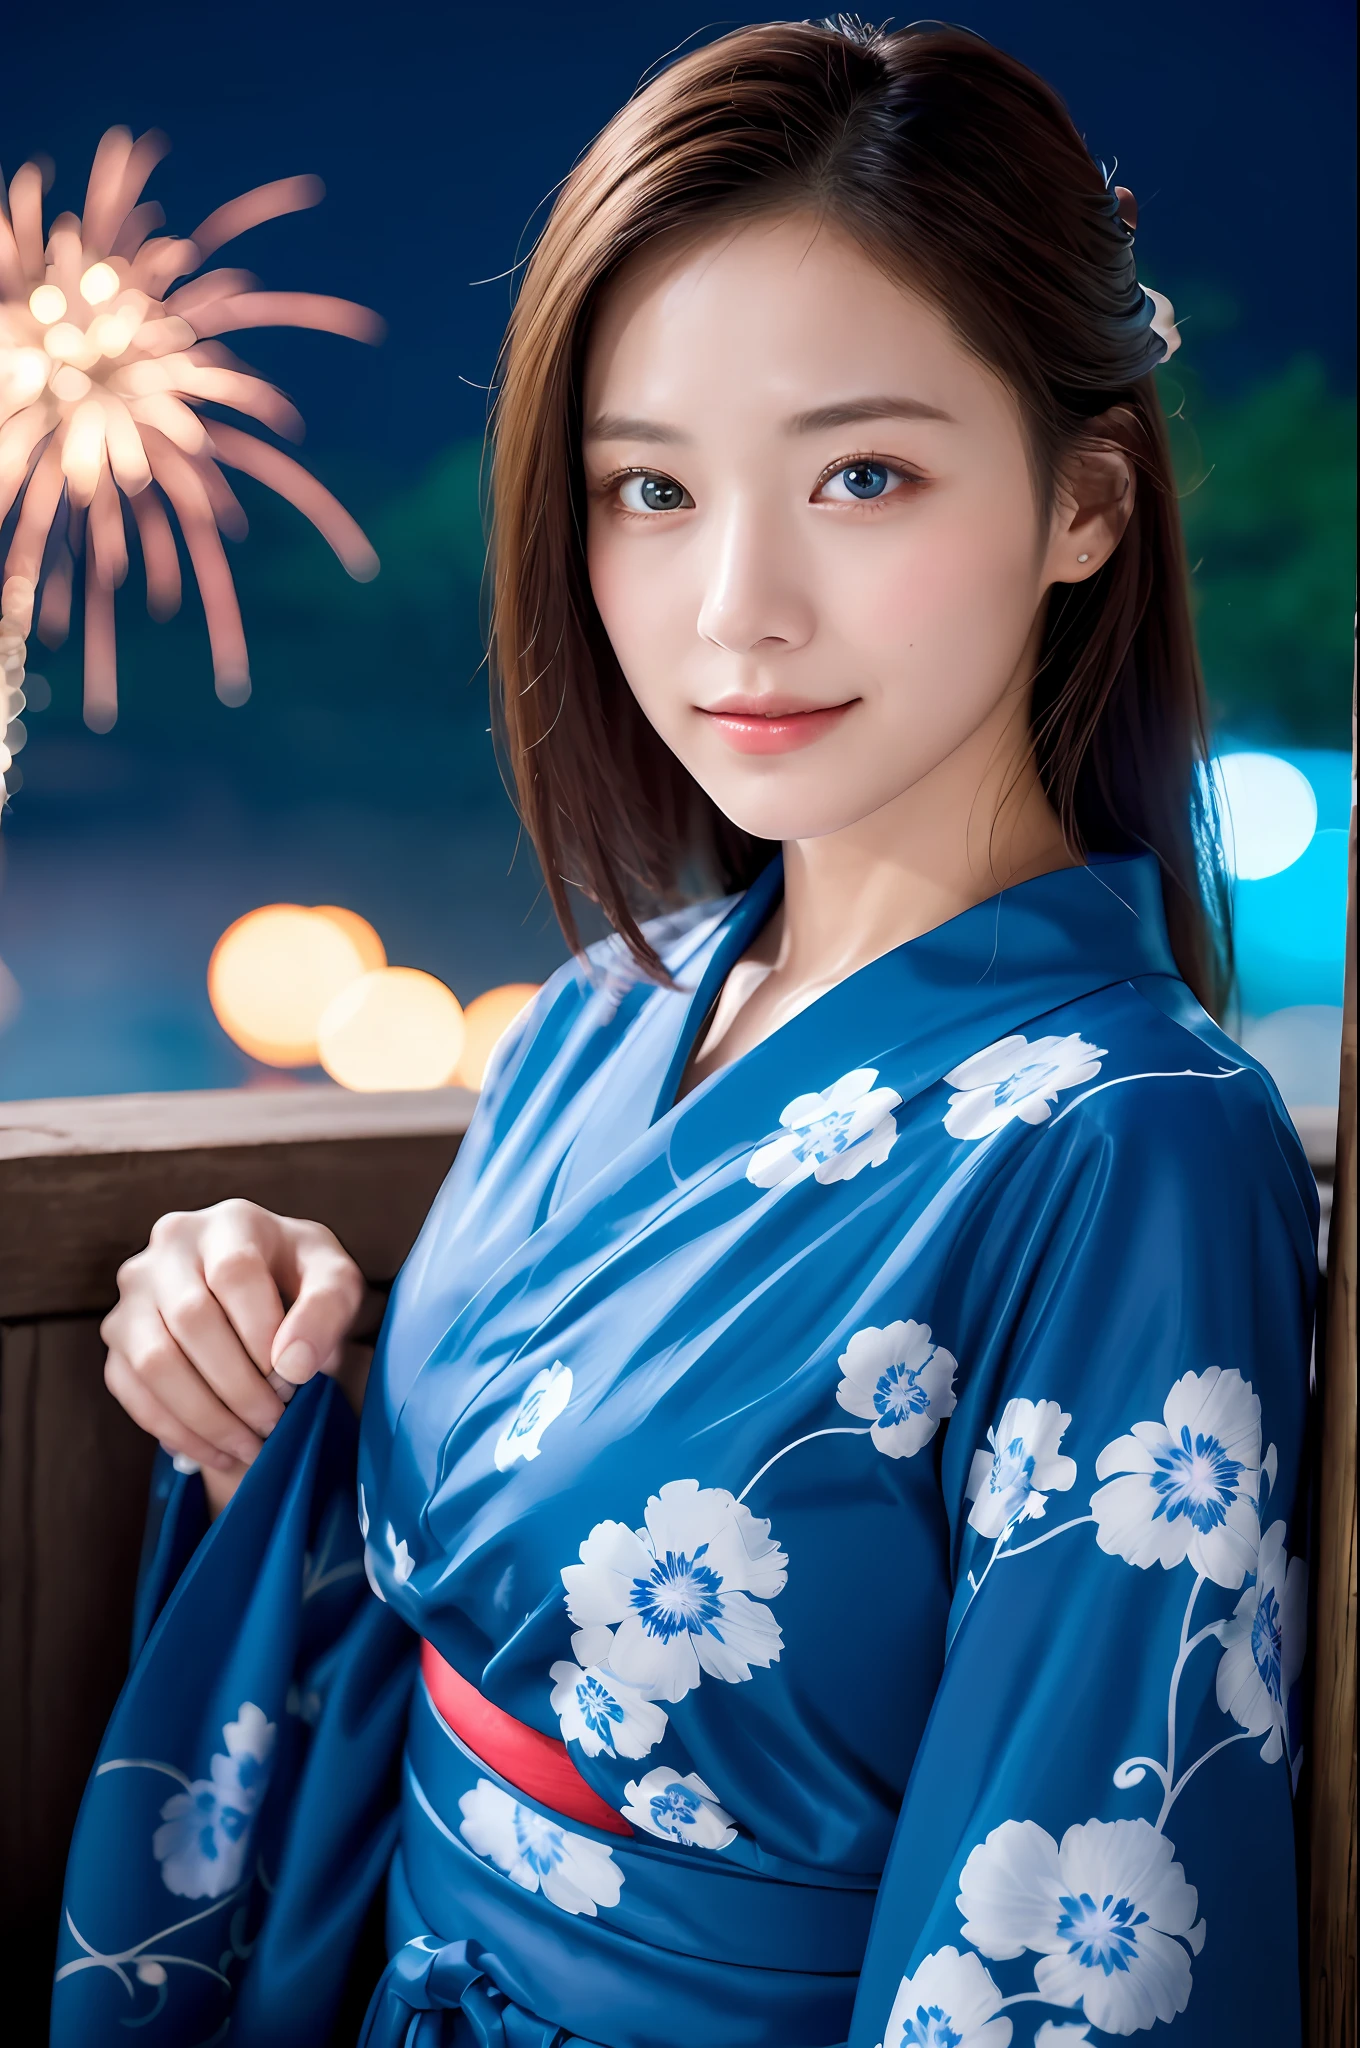 ((Obra de arte, qualidade máxima, super definição, alta definição)), 4K. Sozinho, garota linda, olhos brilhantes, olhos perfeitos, linda irmã do Japão, tema azul, yukata, o fundo é fogos de artifício noturnos